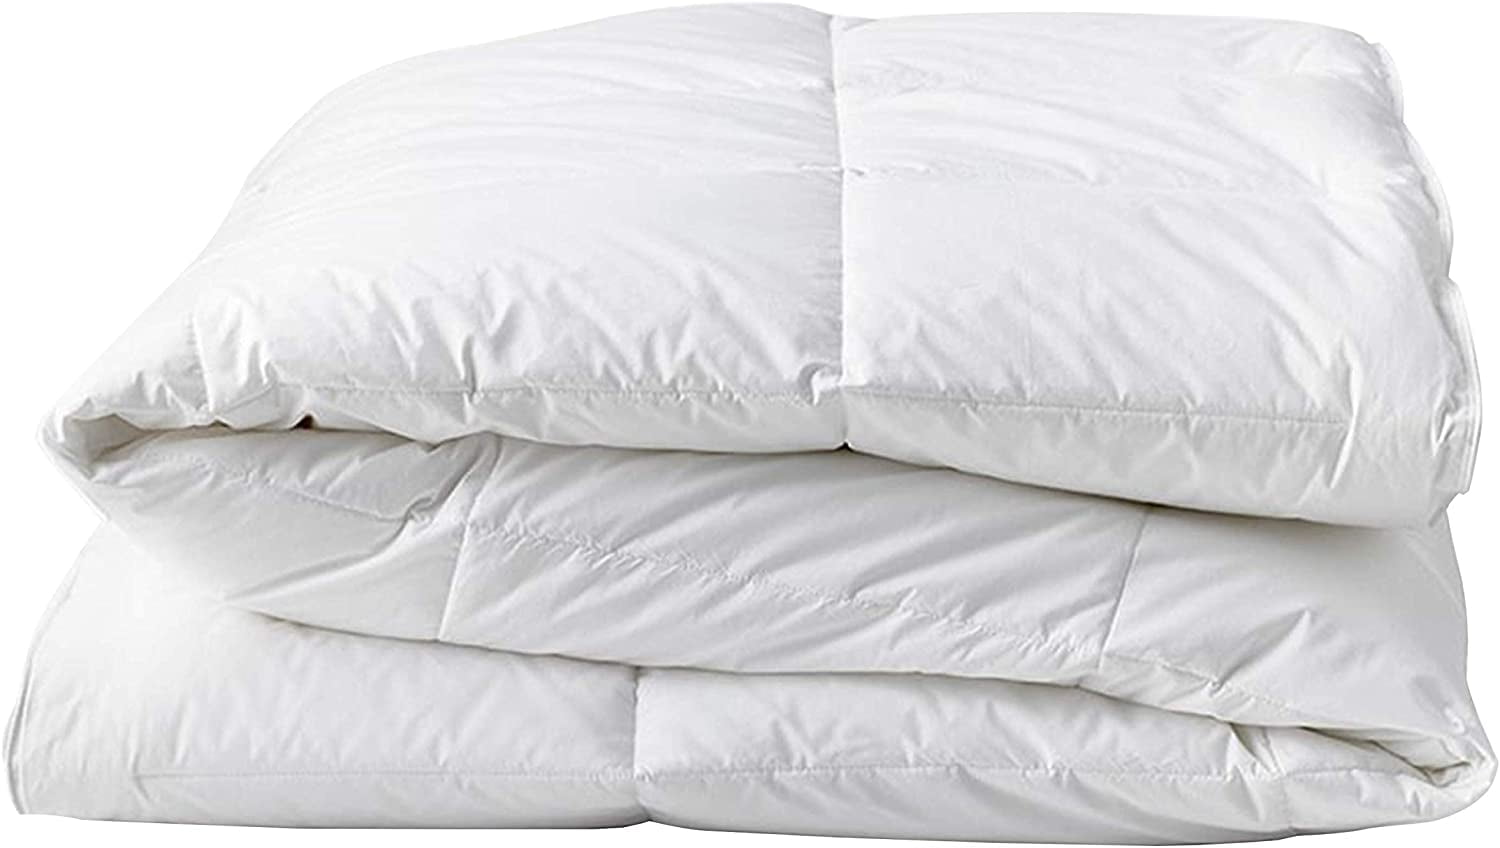 Merino Wool Quilt Bed Cover Duvet 150 x 200 cm 8-10.5tog Medium Weight 500gsm 